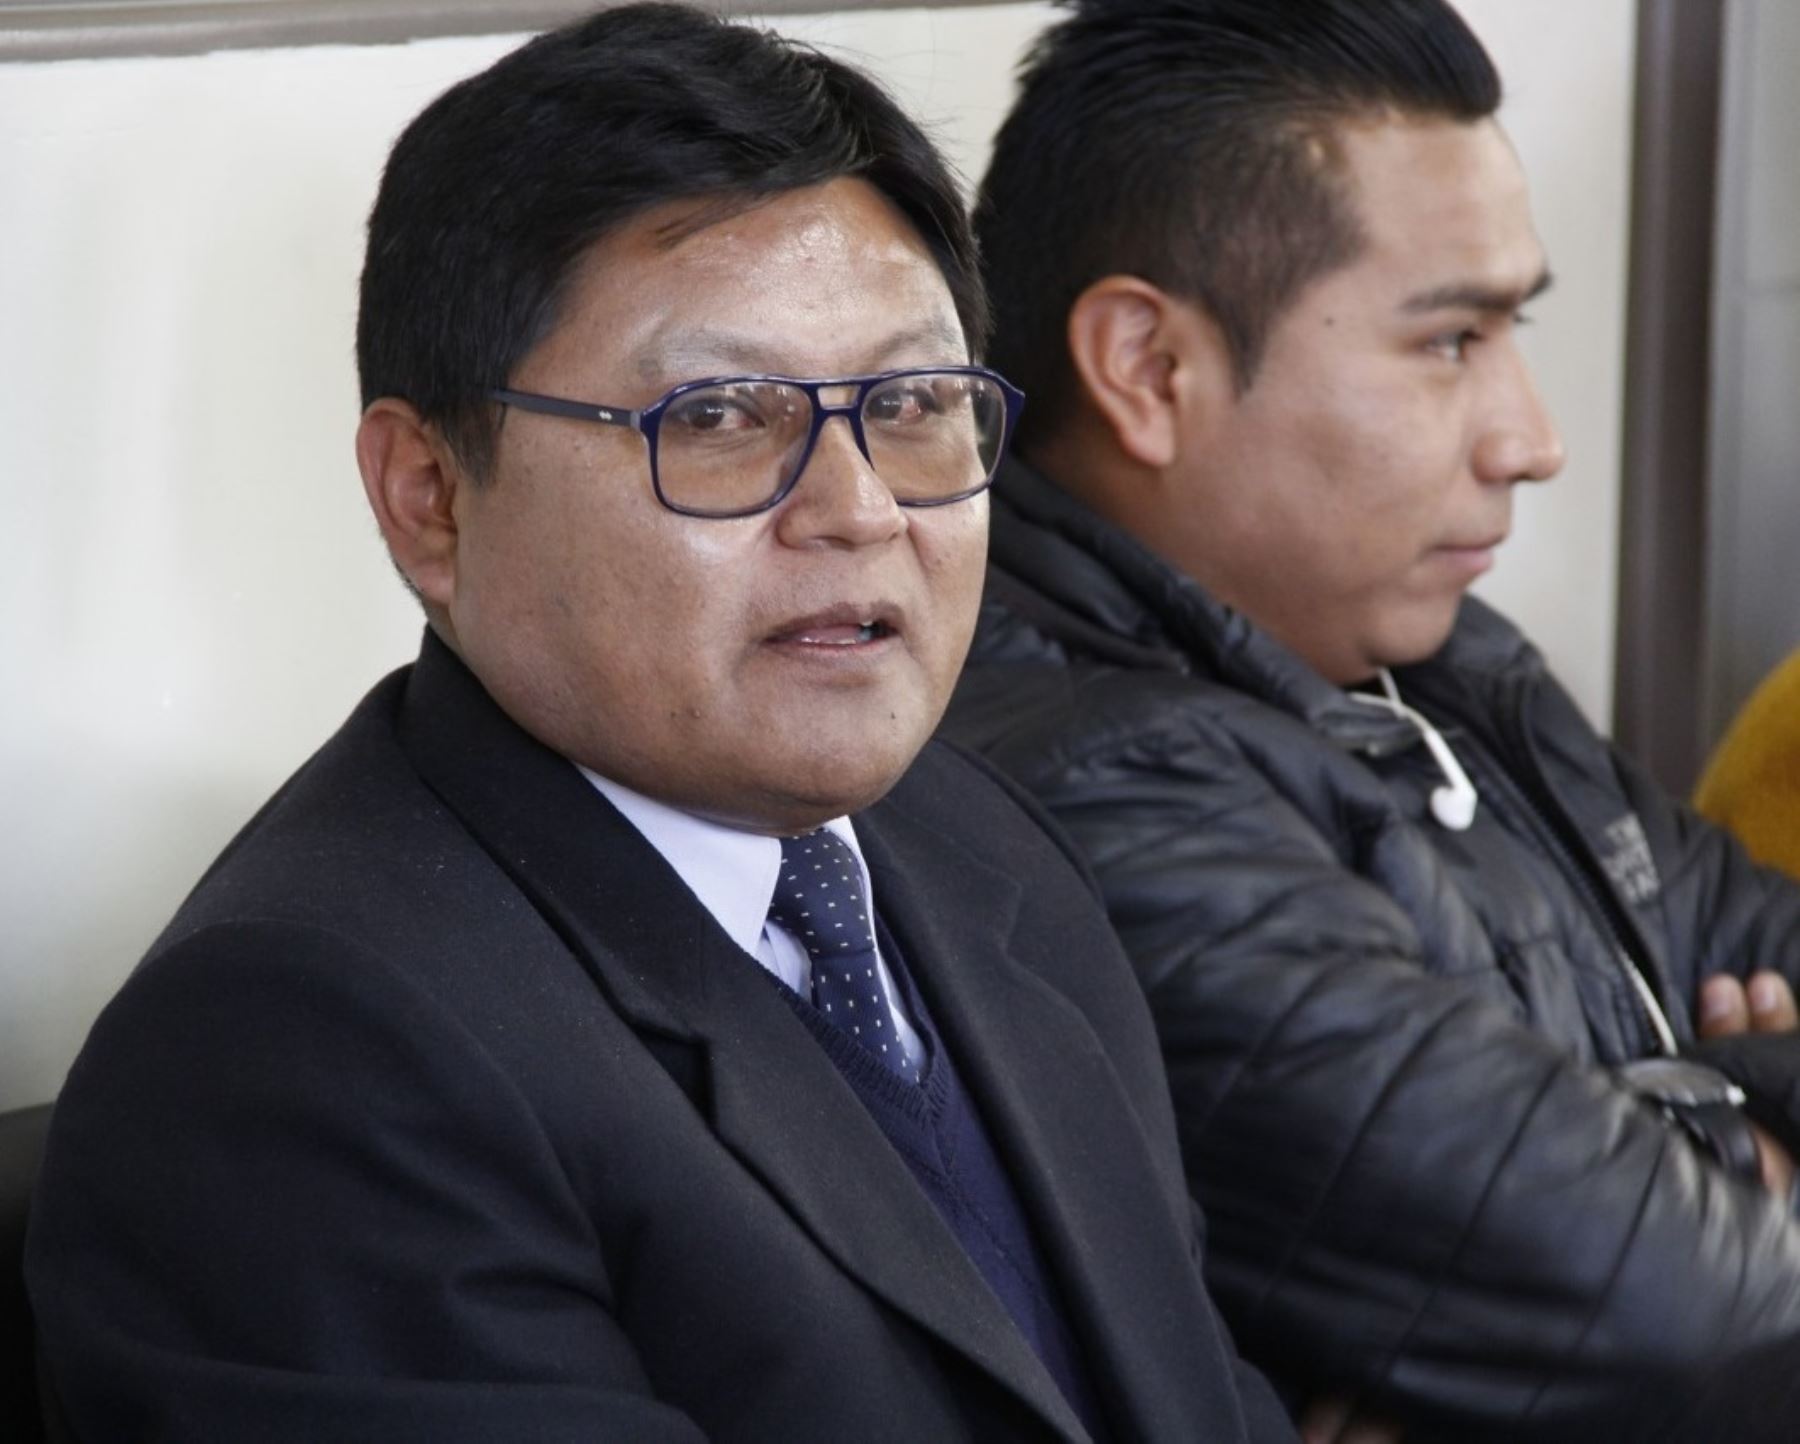 El gobernador regional de Puno, Agustín Luque, fue denunciado penalmente por el presunto delito de homicidio culposo por demorar en instalar planta de oxígeno en dicha región.